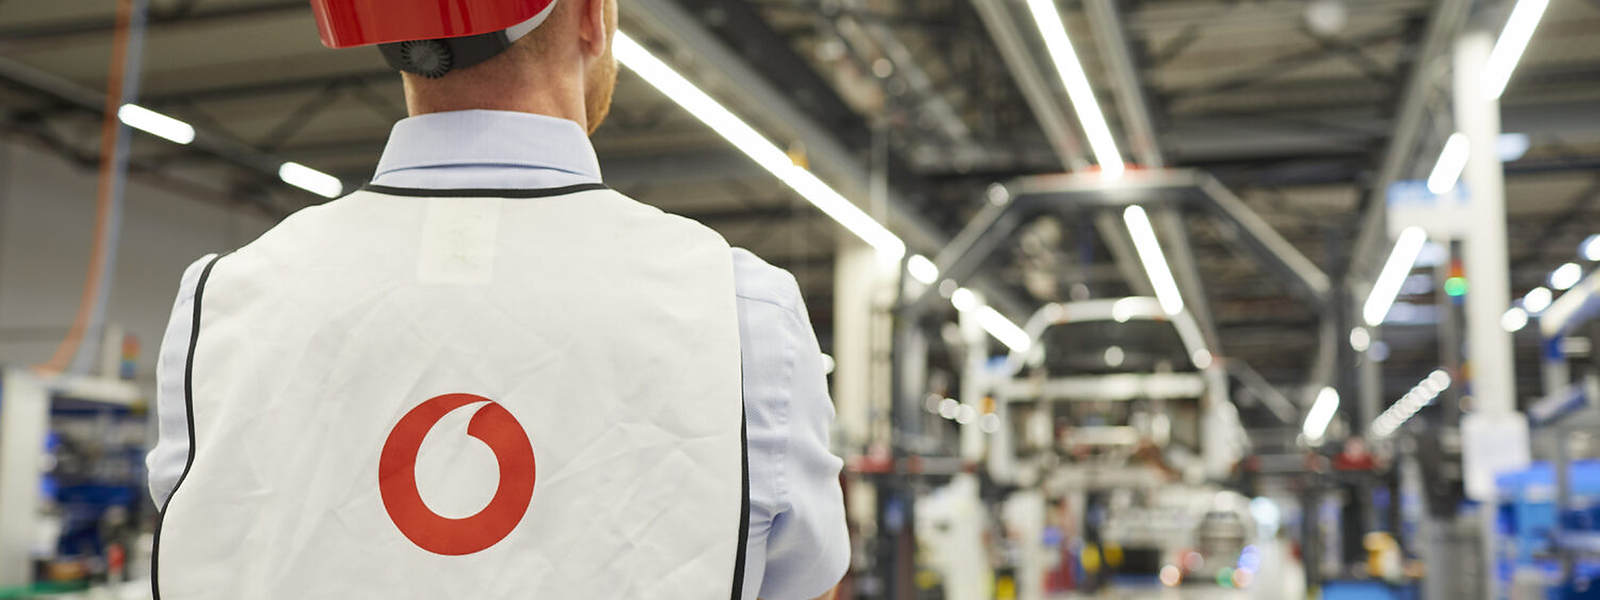 Statt einer Joghurtfabrik kommt in die Gewerbezone Wolser ein Distributionszentrum von Vodafone.